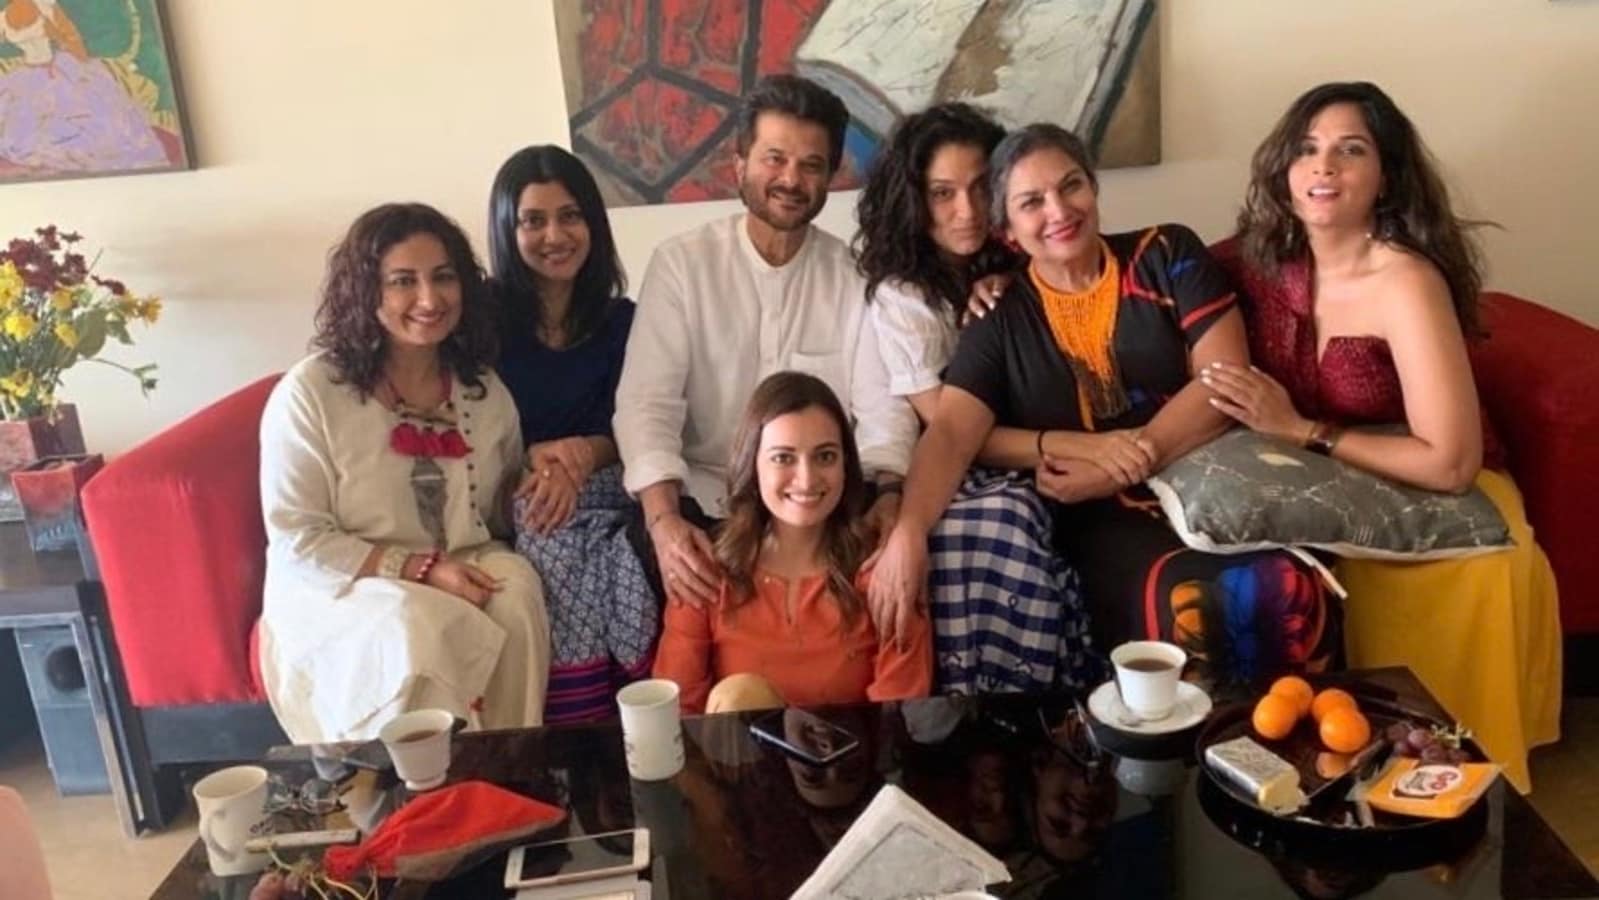 Shabana Azmi shares pic from her get-together with Anil Kapoor, Dia Mirza, Konkona Sen Sharma: ‘Happy moments’